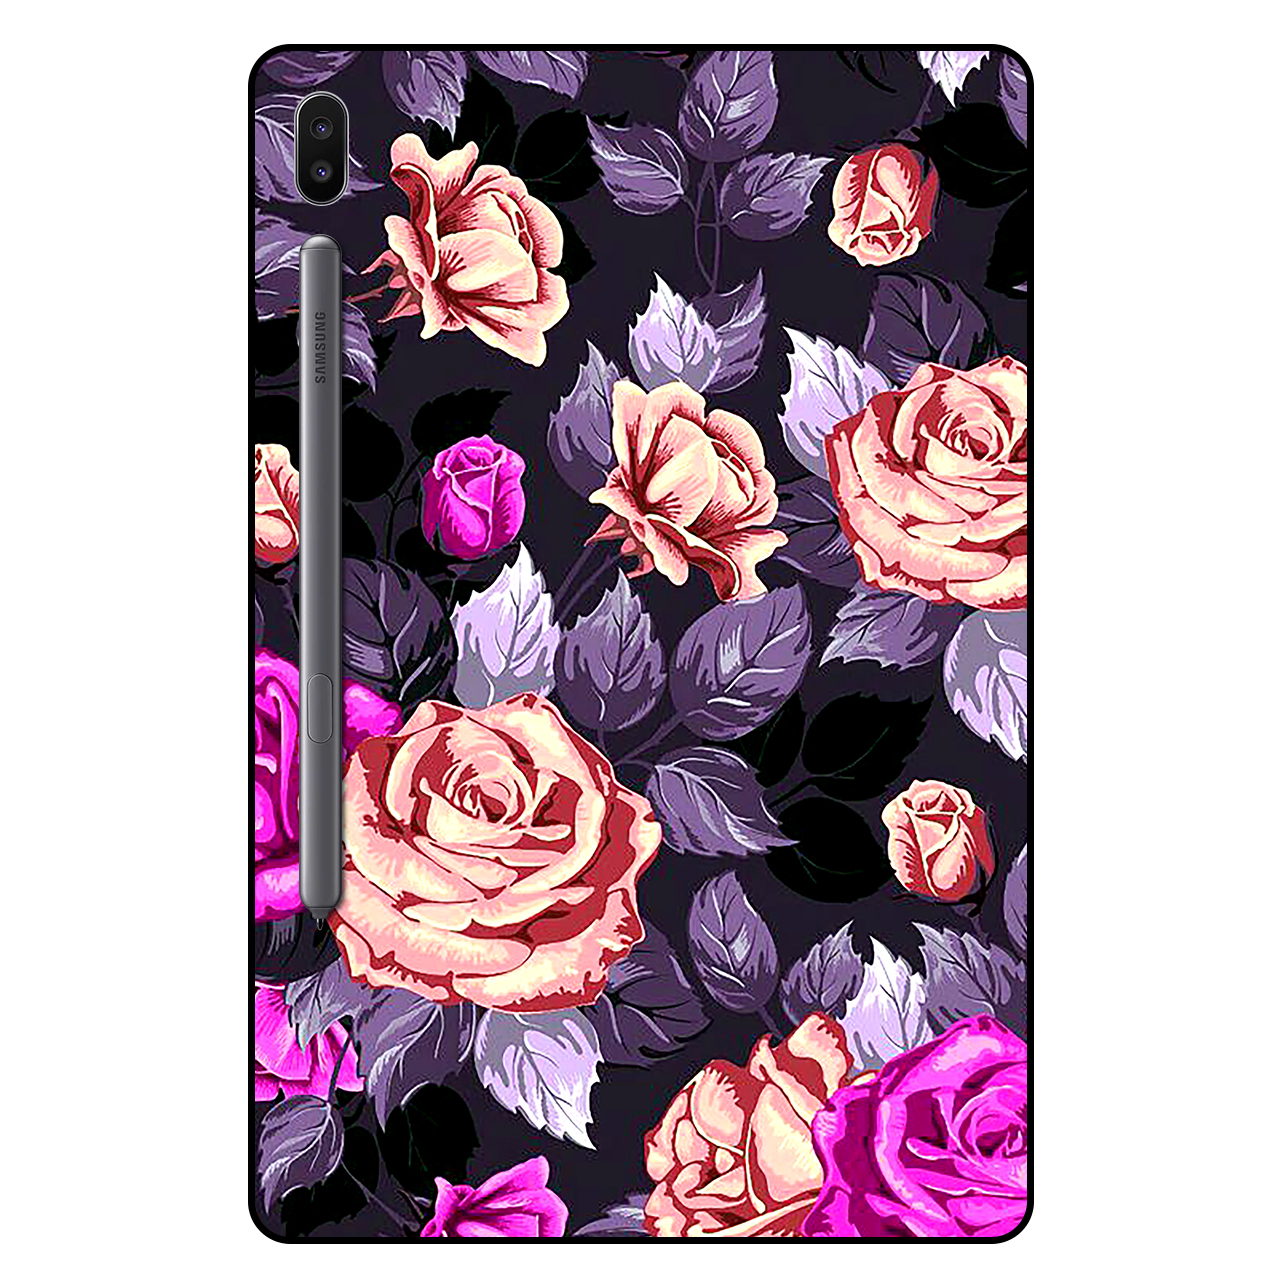 کاور مگافون طرح گل مدل 1652 مناسب برای تبلت سامسونگ Galaxy Tab S6 10.5 2019 / T860 / T865